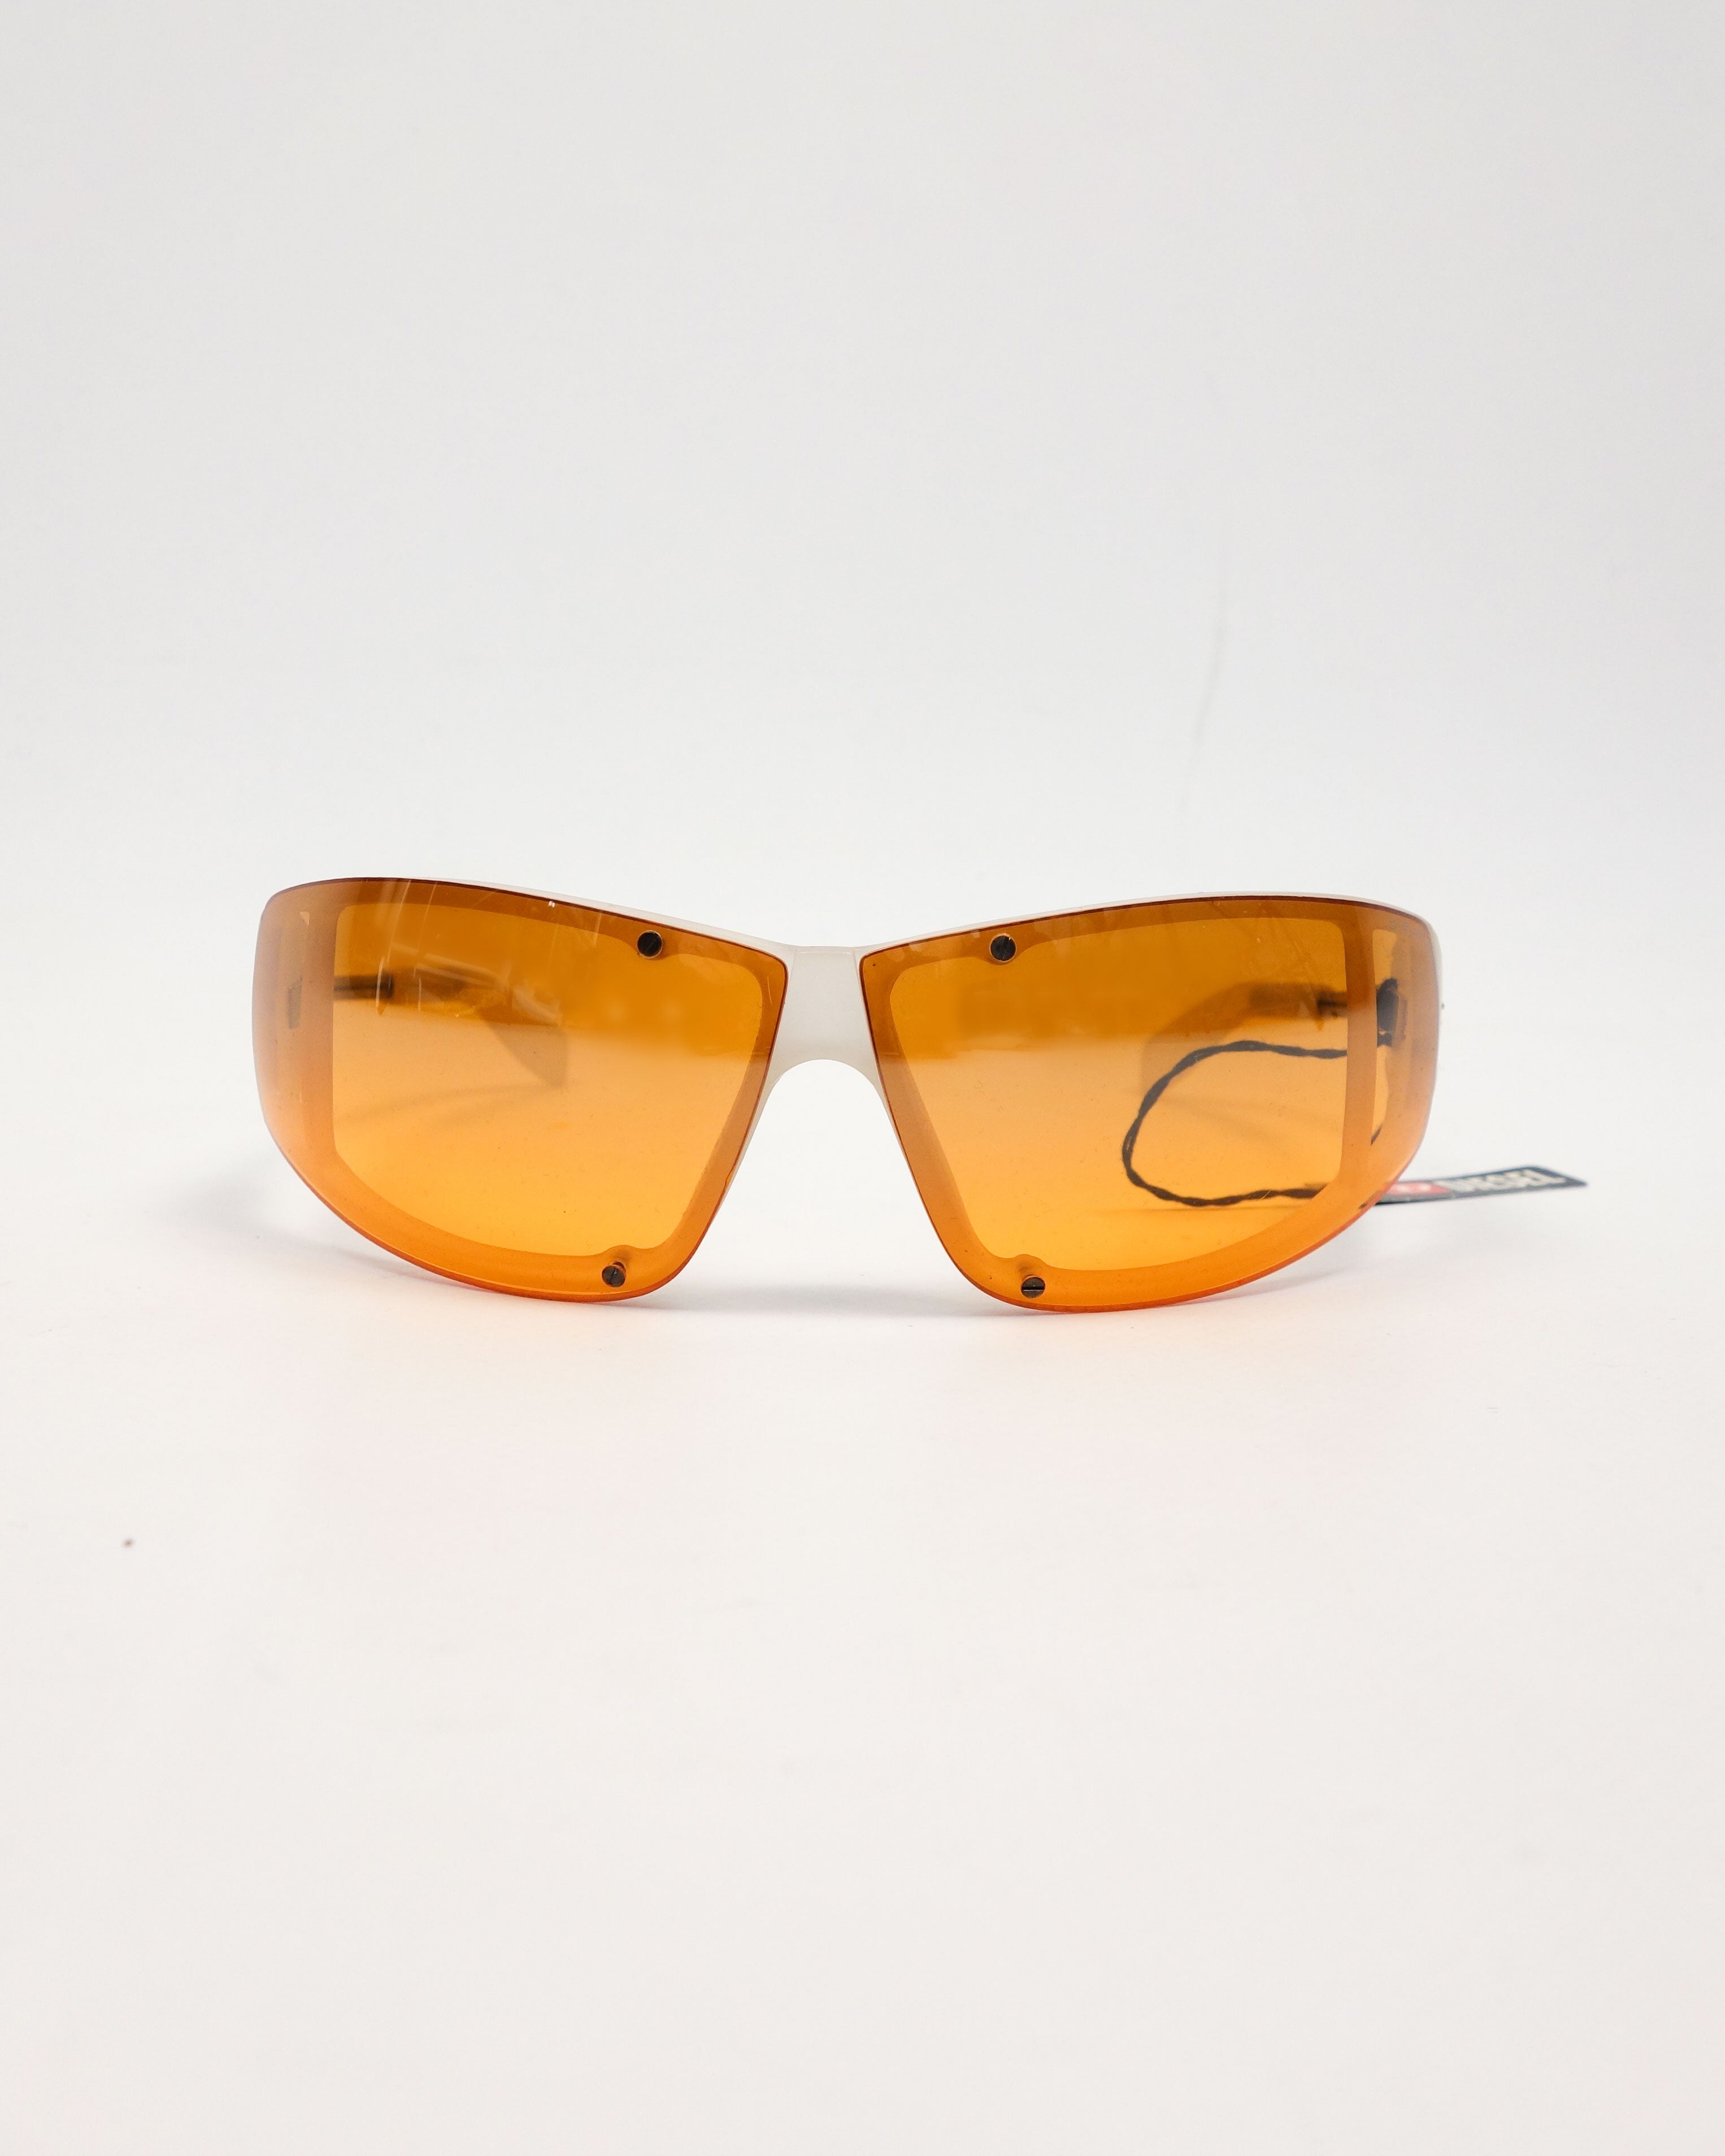 Diesel Jambo Orange Sunglasses 2000's – Vintage TTS